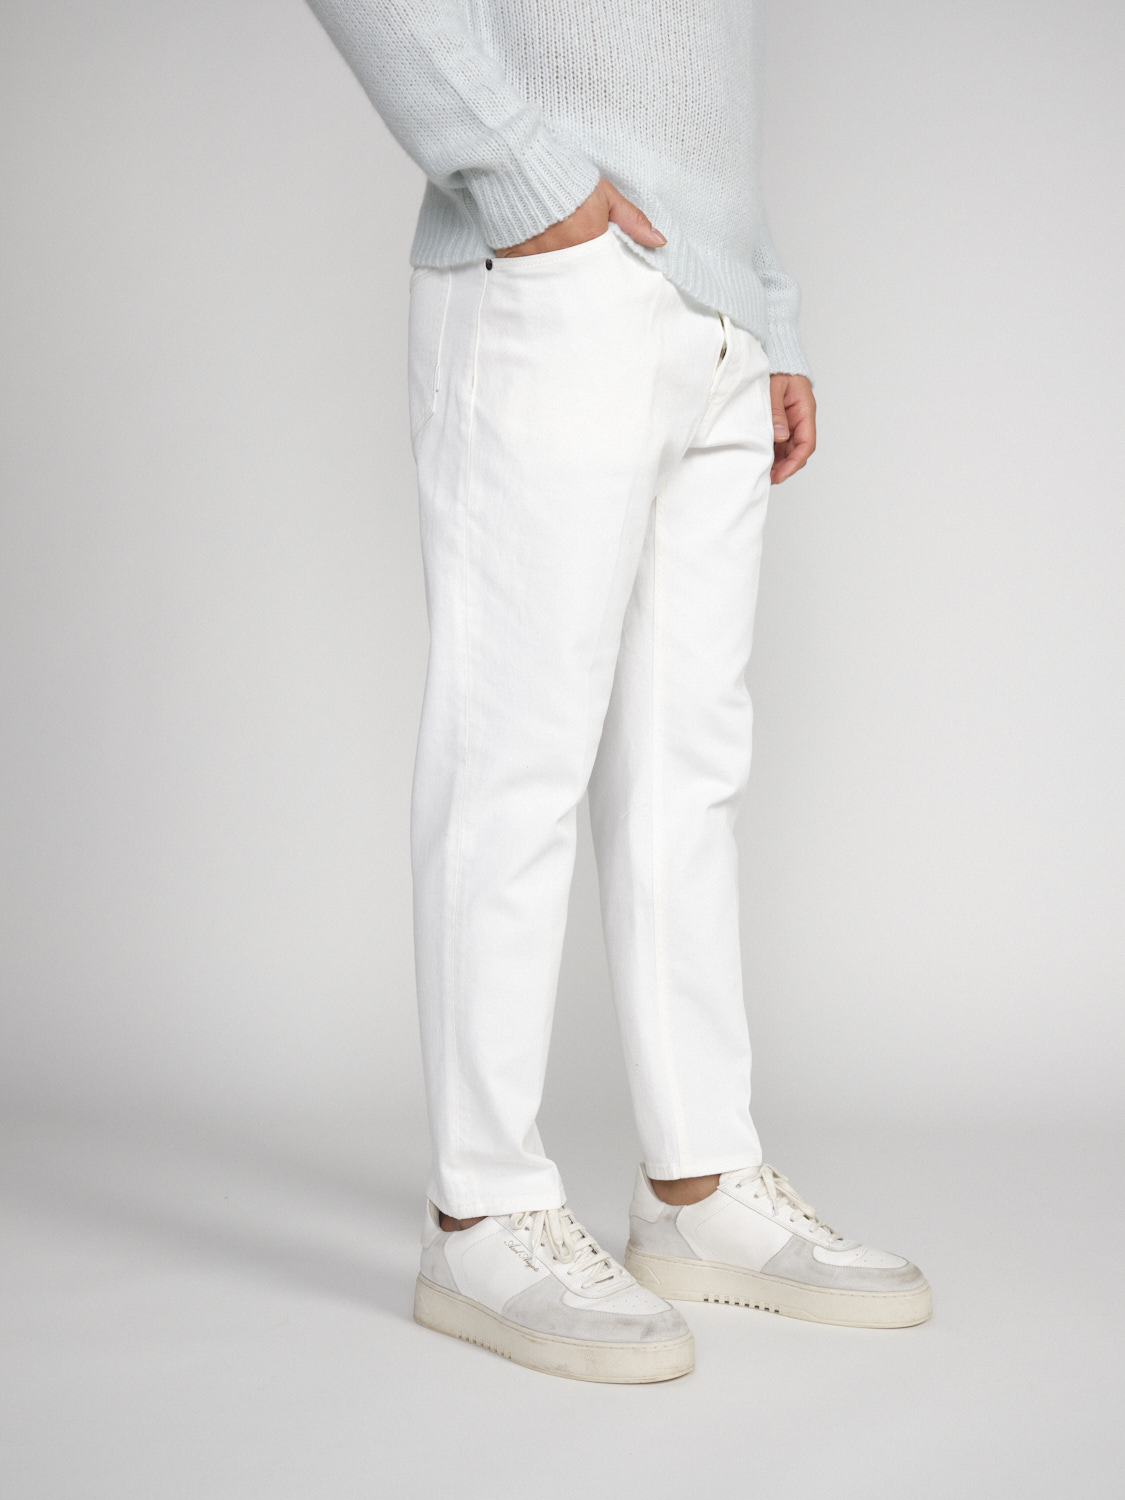 PT Torino Rebel - Jeans in cotone elasticizzato   bianco 31